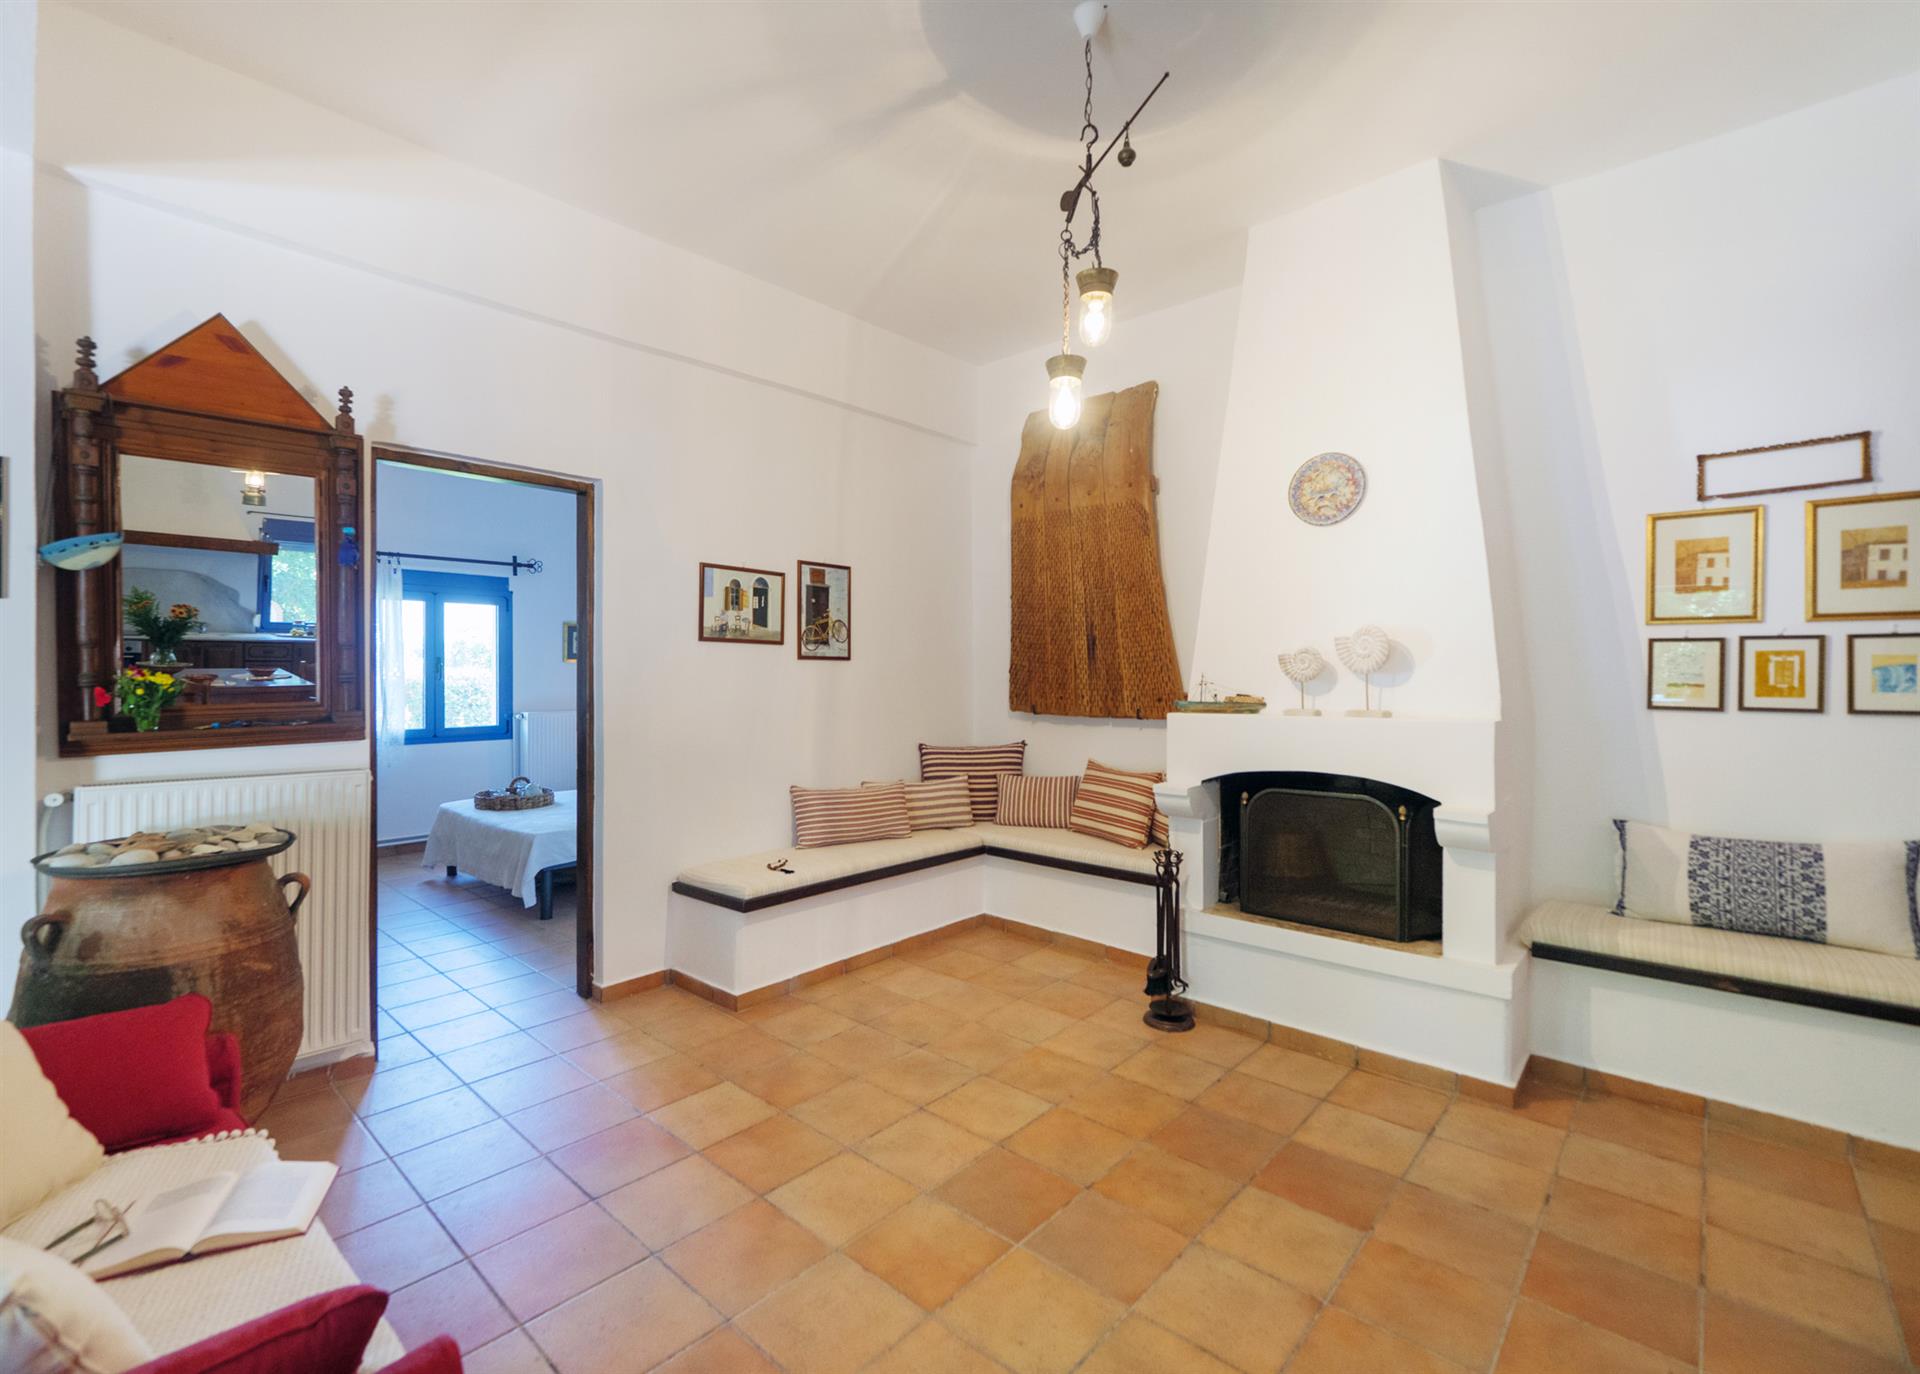 Fretki z Heraklionu . Na sprzedaż w pełni wyposażony tradycyjny dom o powierzchni 140 mkw na działc